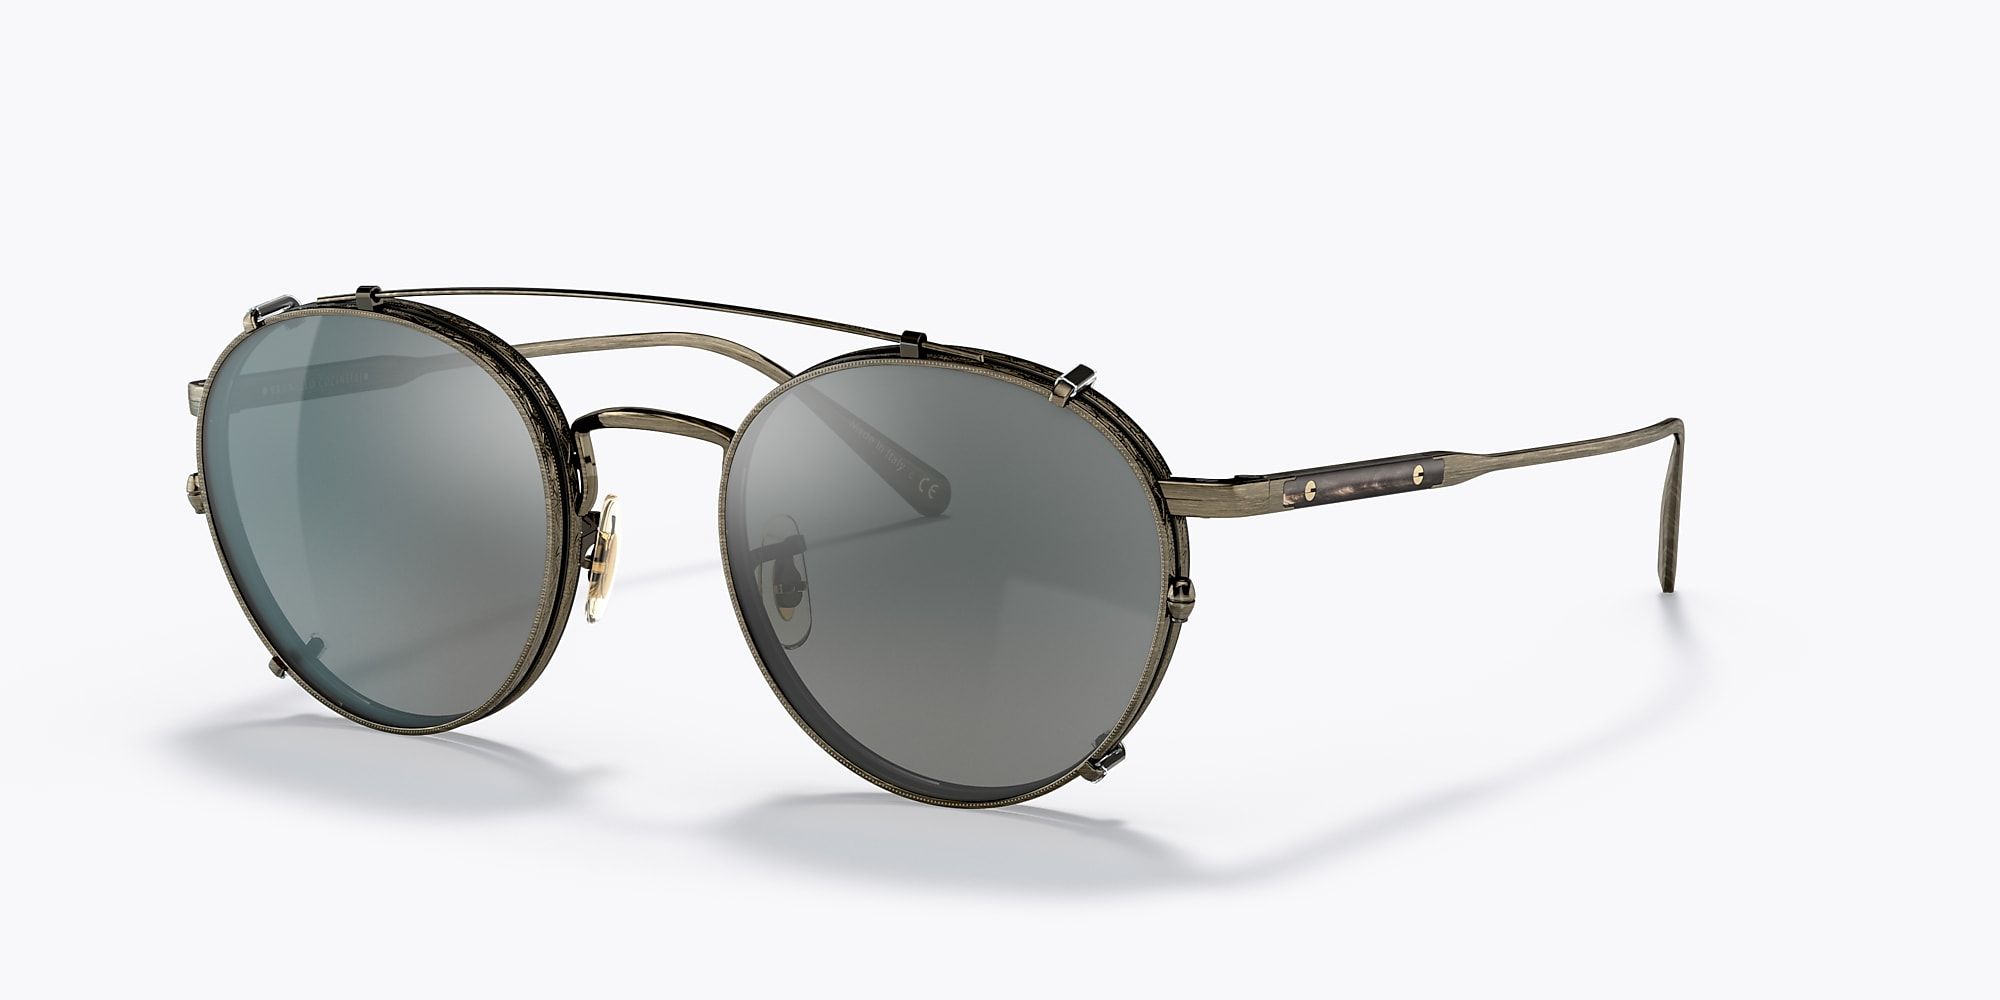 Artemio Glasses with Clip-On Sunglasses